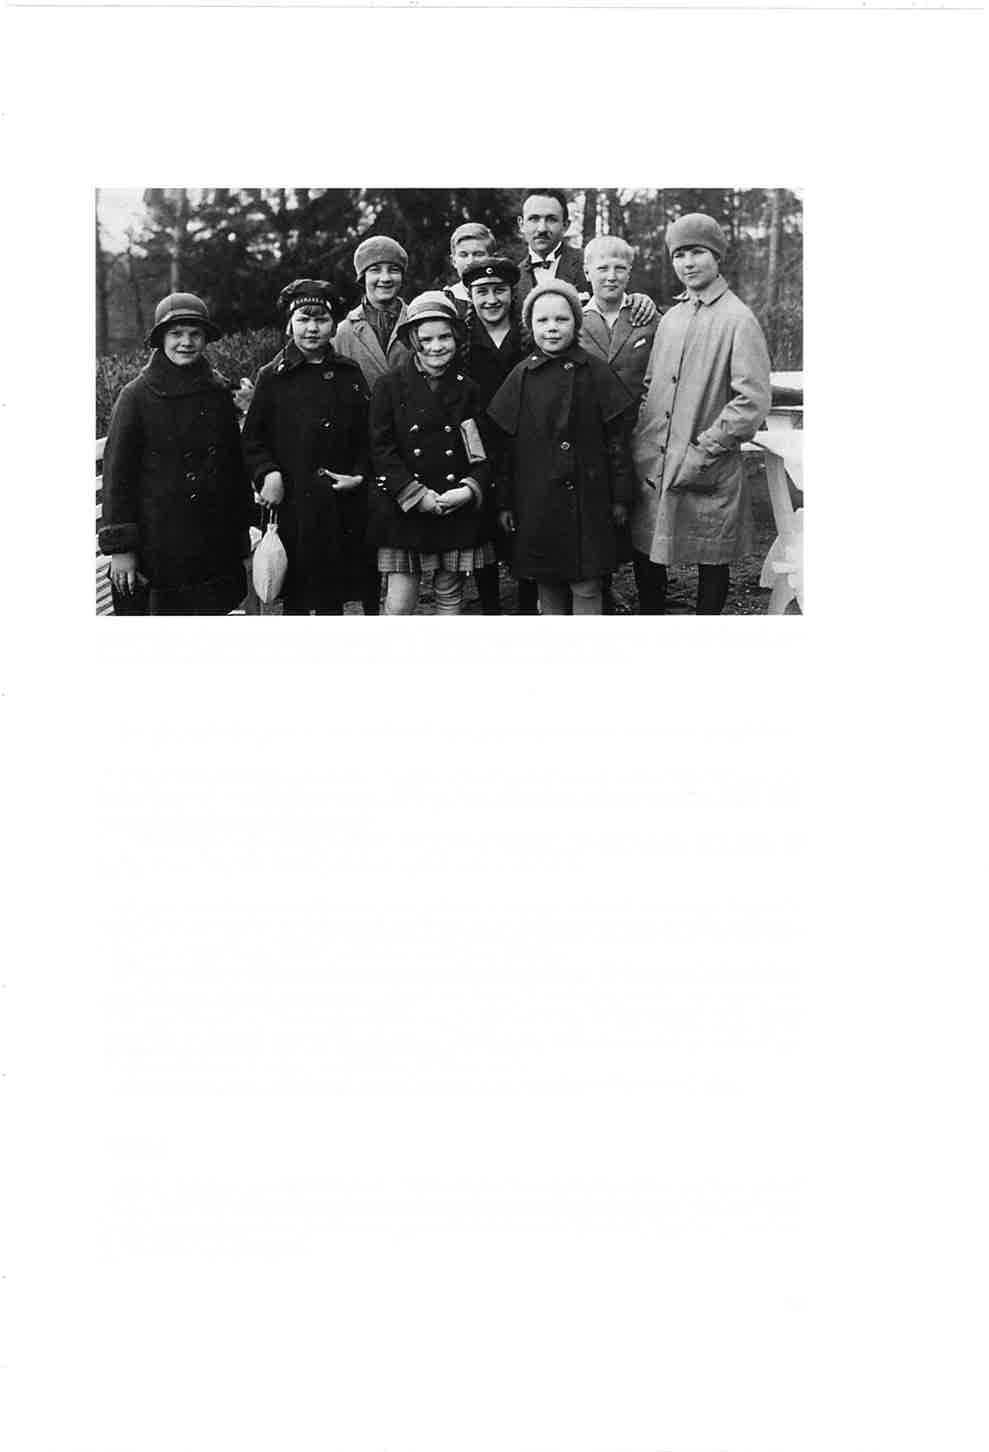 Sirpo retkellä lapsioppilaiden kanssa 1927 Monrepoossa. Sirpan vieressä oikealla hänen poikansa Willy. Edessä keskellä Sirkka Jämsä (Gestrin), kuvan tallentaja.